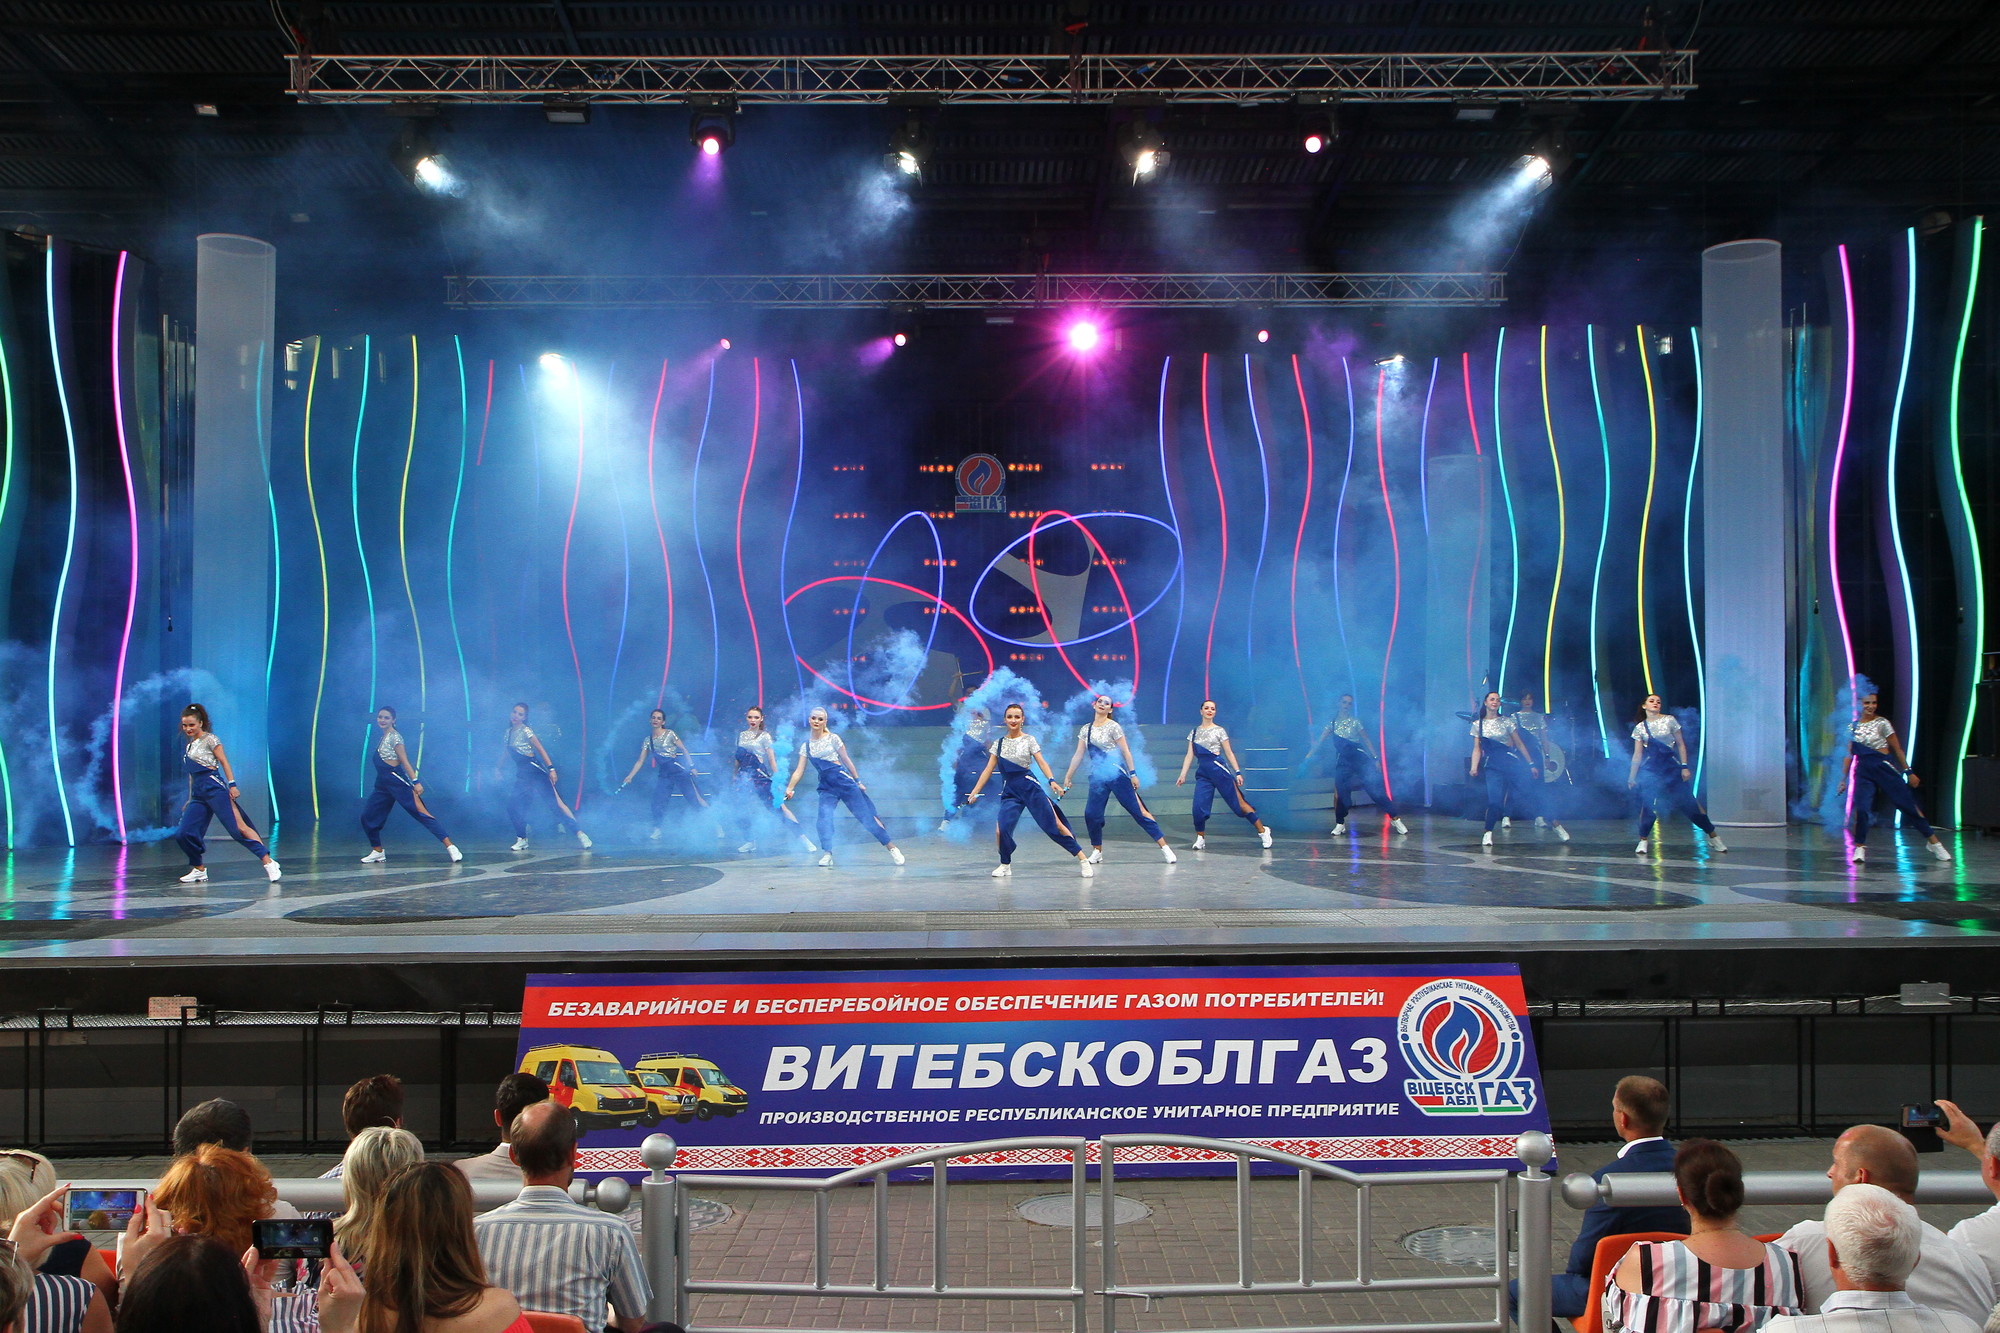 Благотворительный концерт творческого коллектива УП "Витебскоблгаз" 